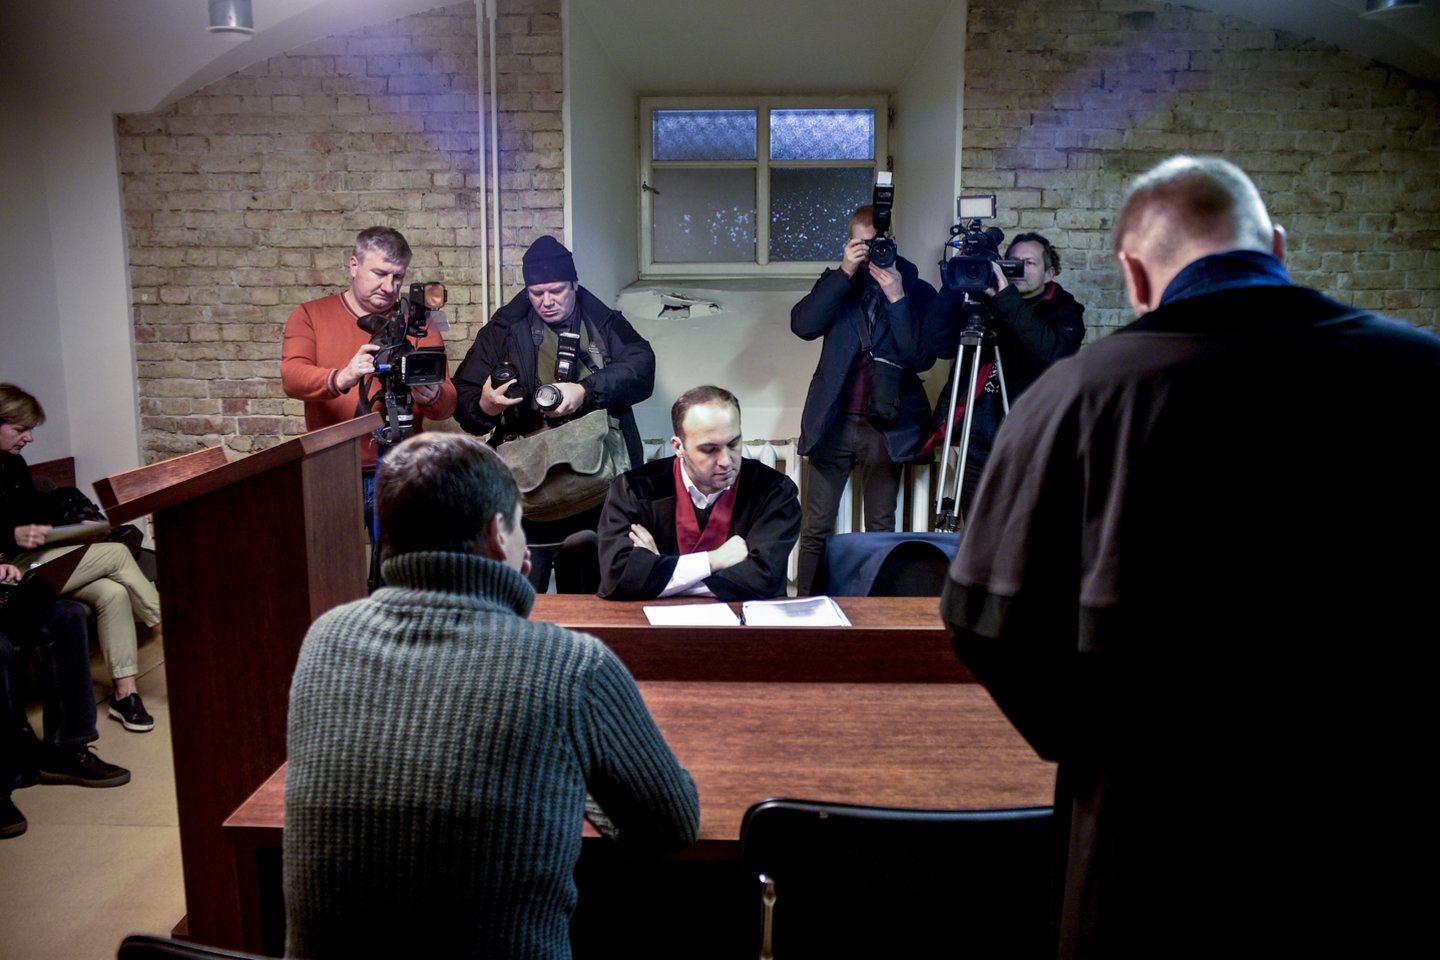  Teismas vėl nagrinėja bylą dėl aktorių pasirodymo Turgelių bažnyčioje. <br> V.Ščiavinsko nuotr. 